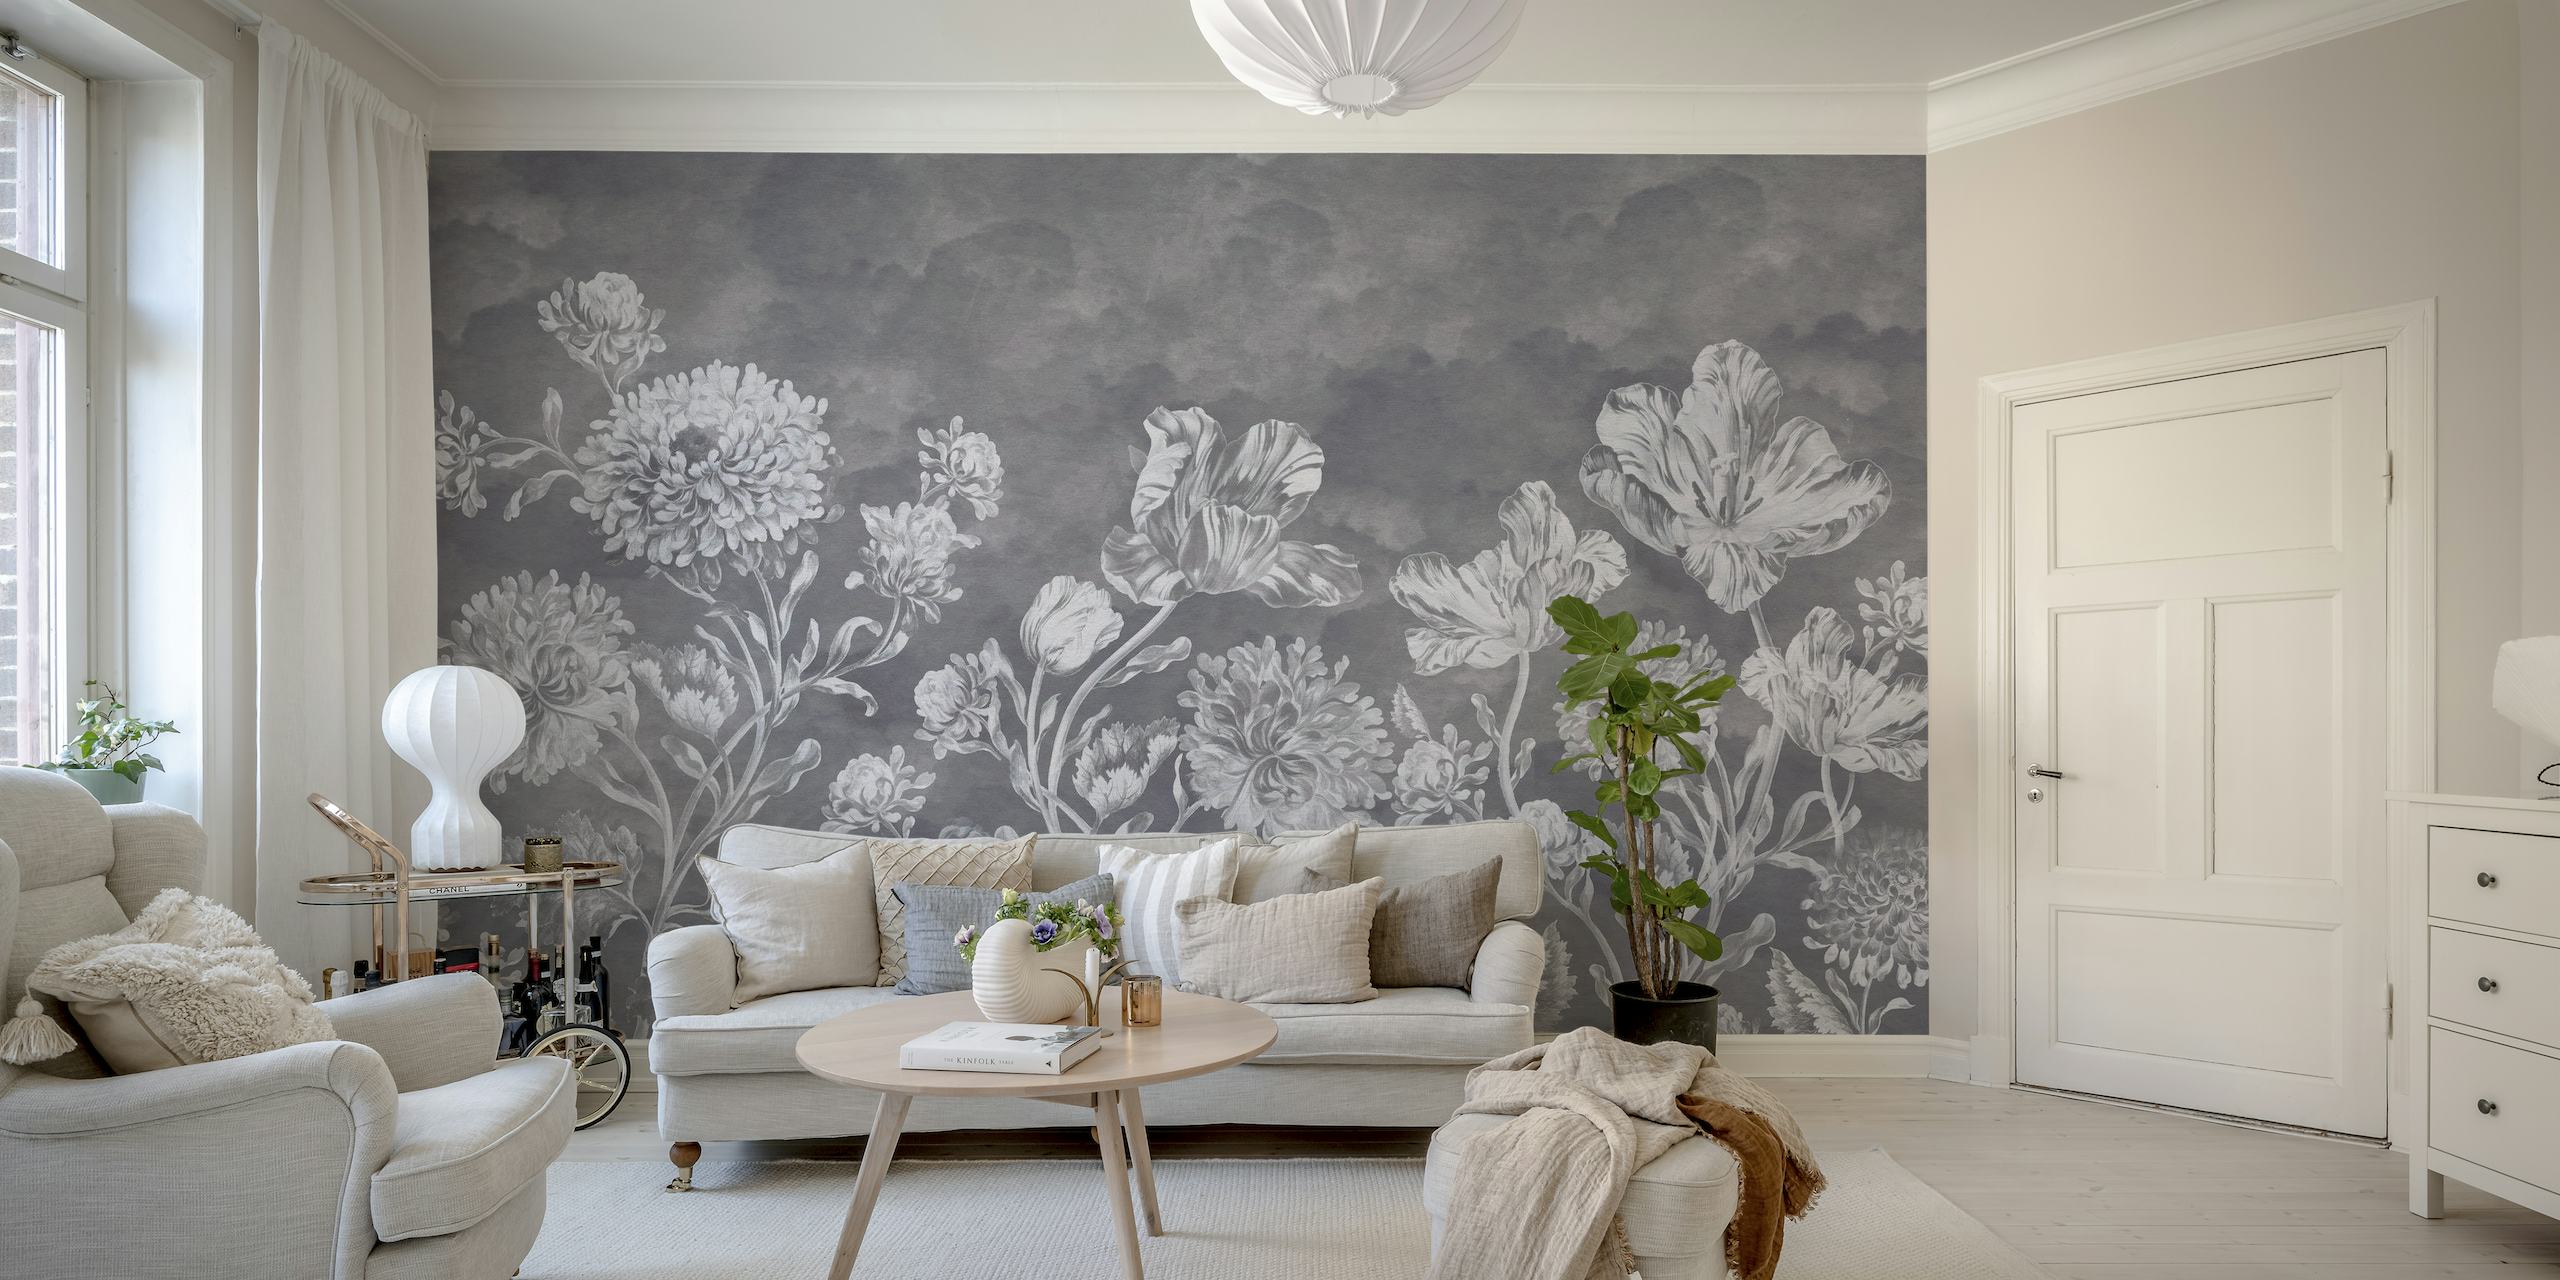 Zidna zidna slika u tamnom baroknom stilu s kompliciranim cvjetnim dizajnom u sivim tonovima